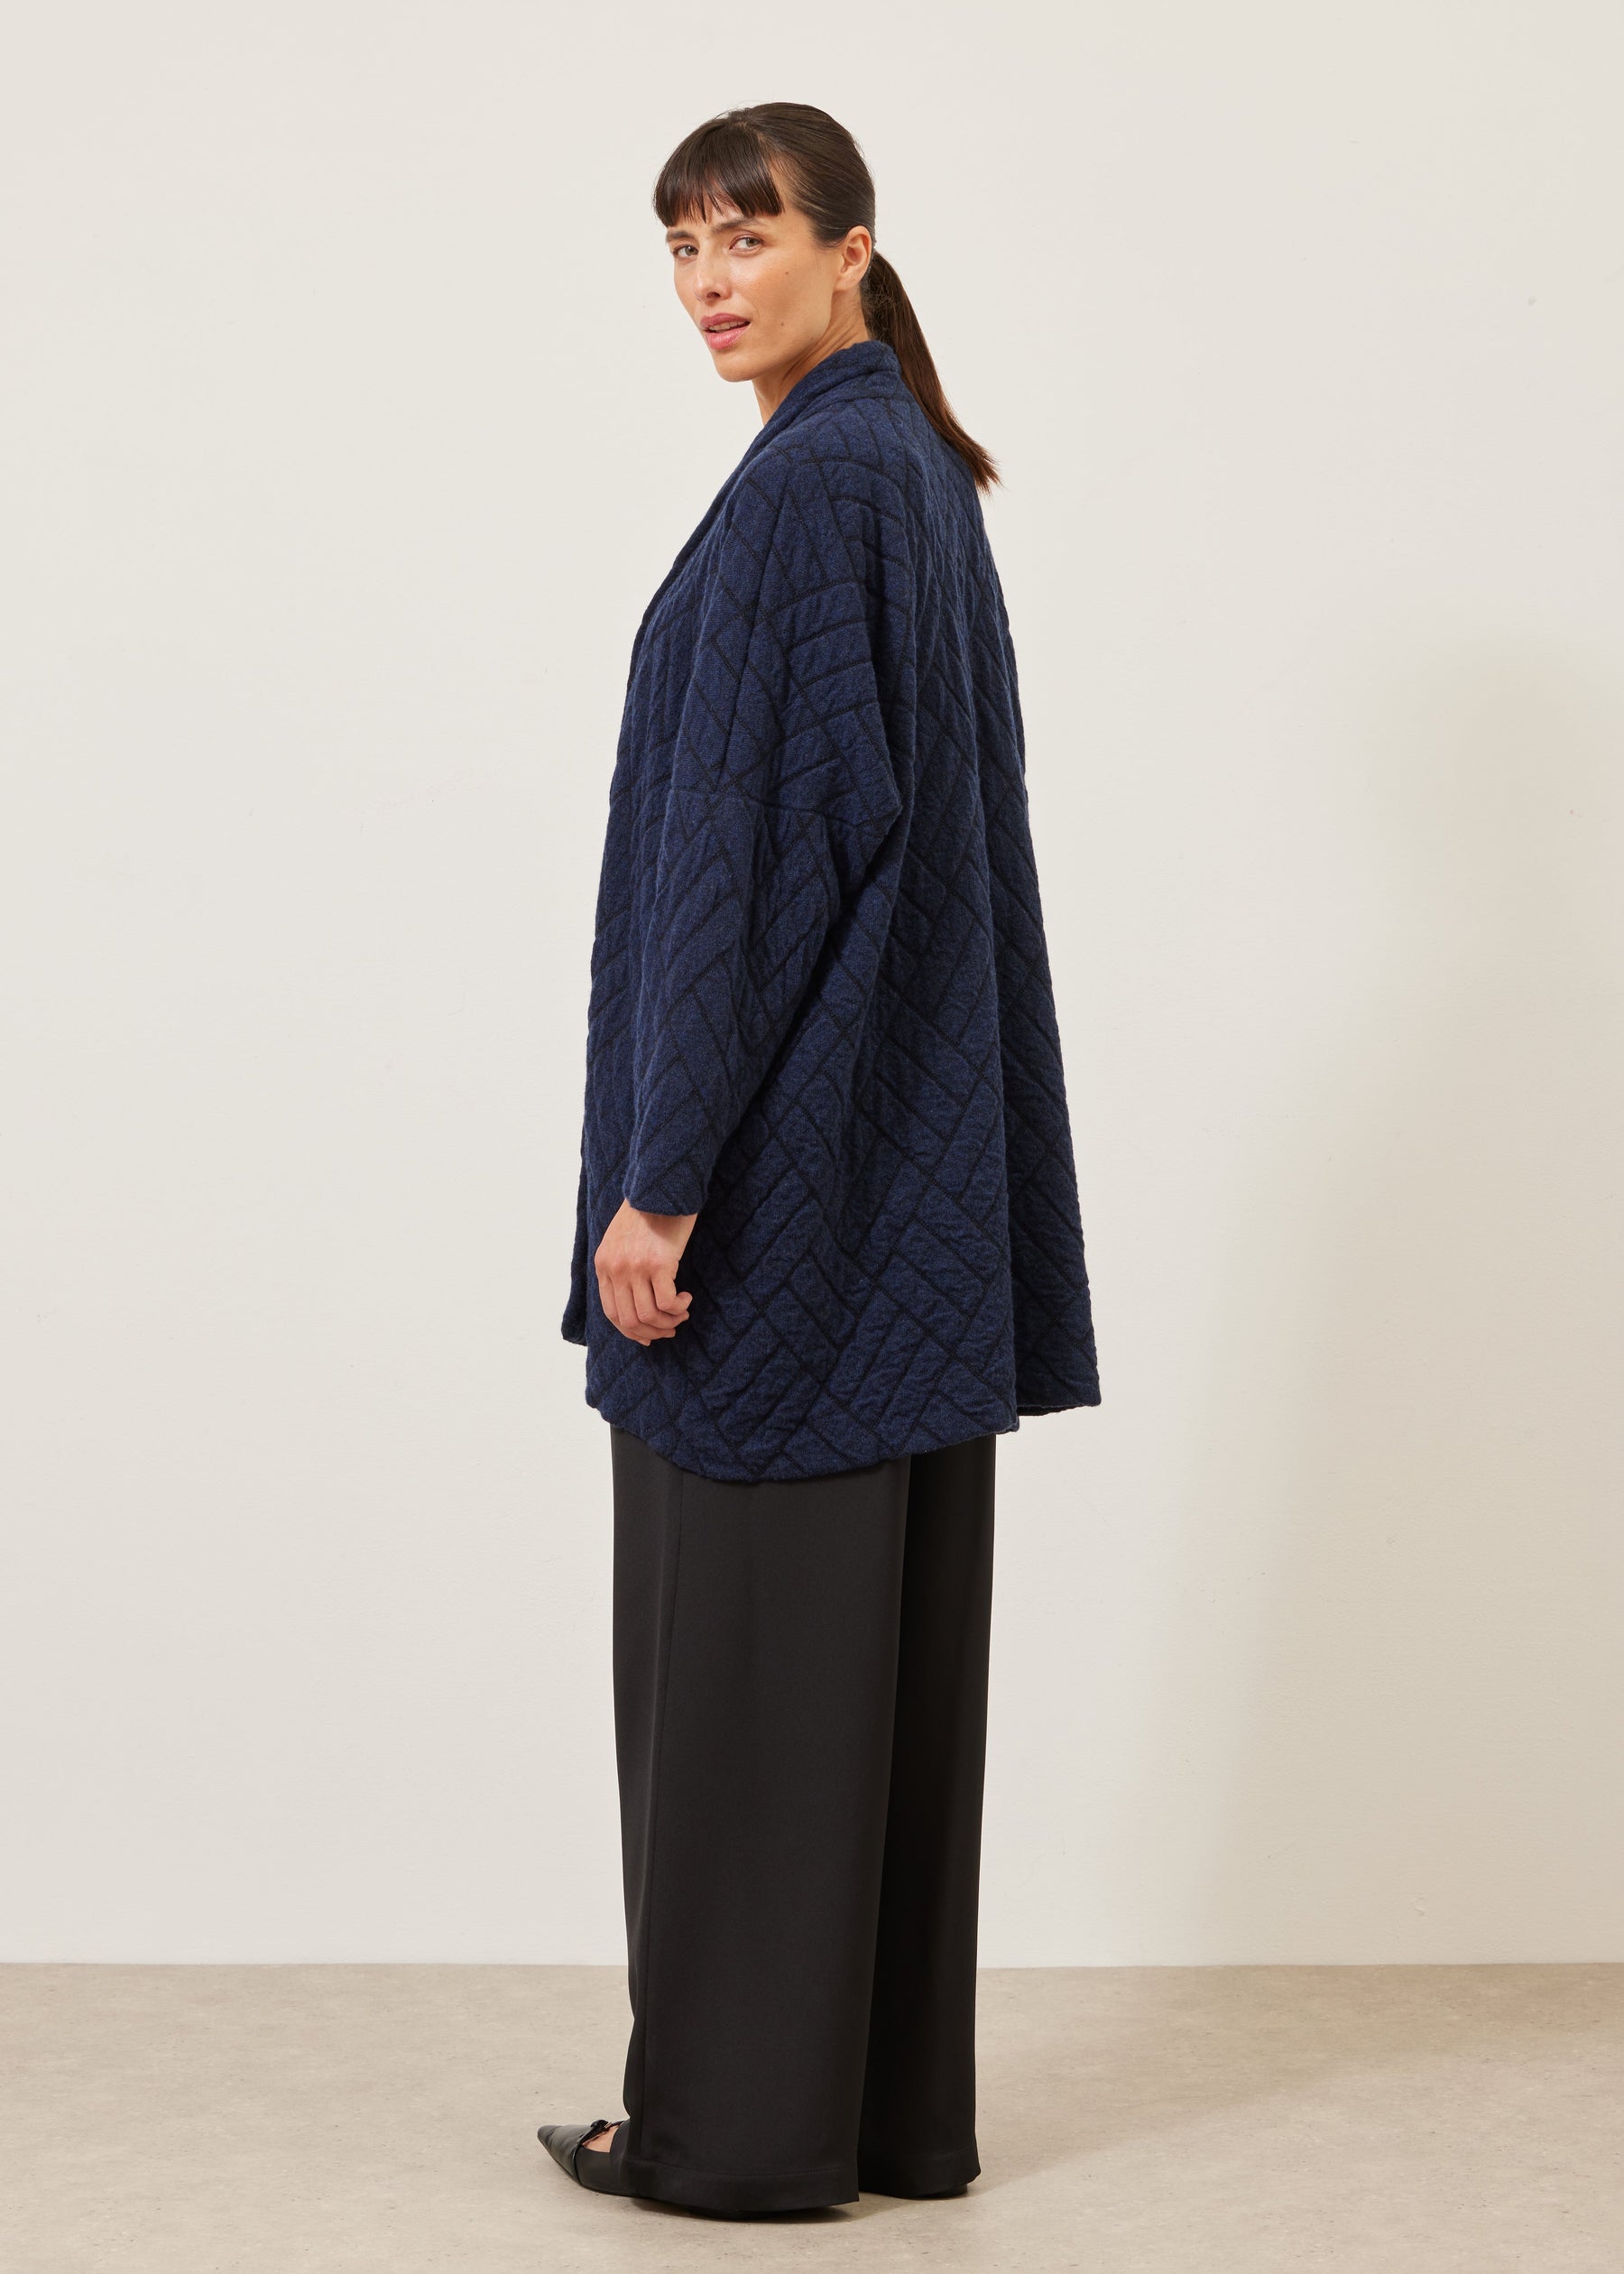 shawl collar knit cardigan - long plus